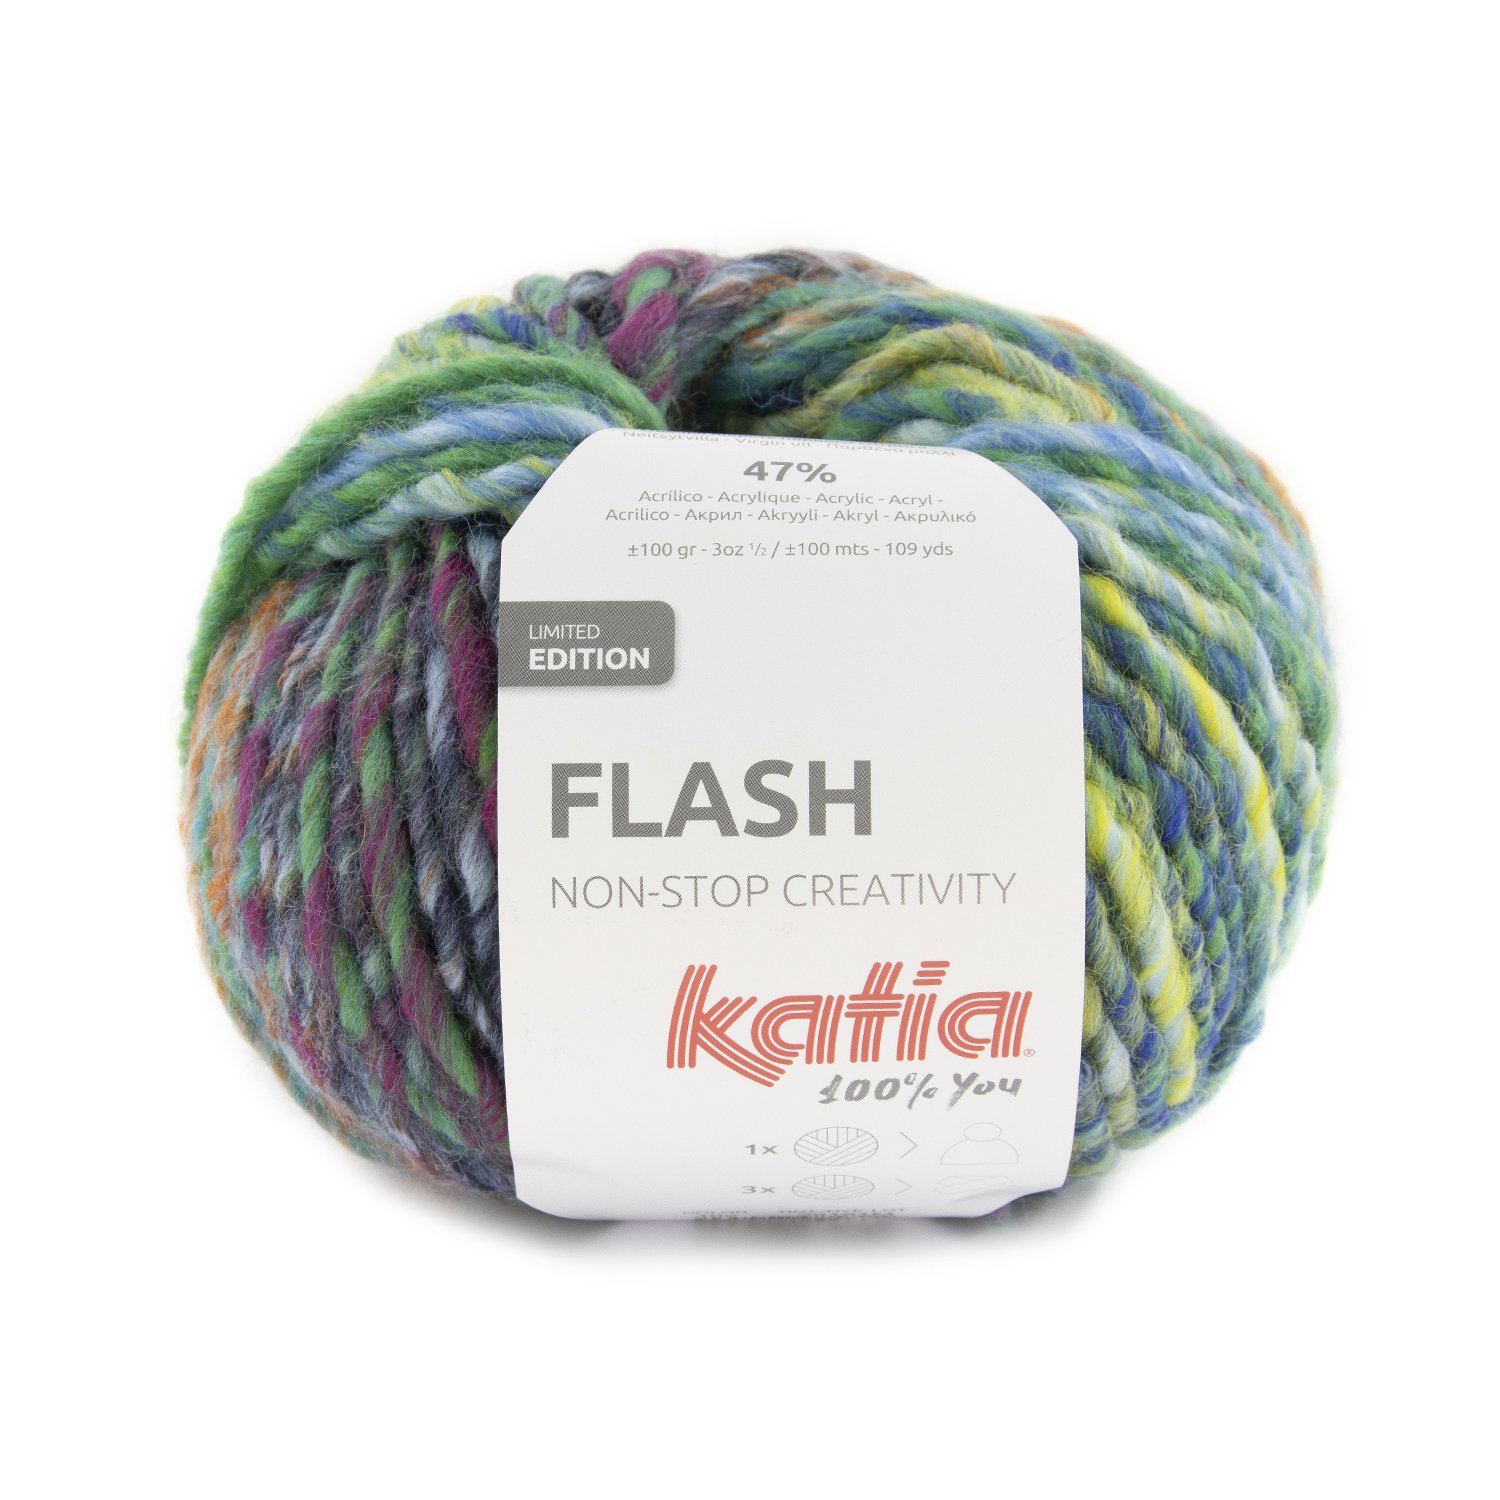 402 laine-fil-flash-tricoter-laine-vierge-acrylique-bleu-vert-lilas-automne-hiver-katia-402-fhd